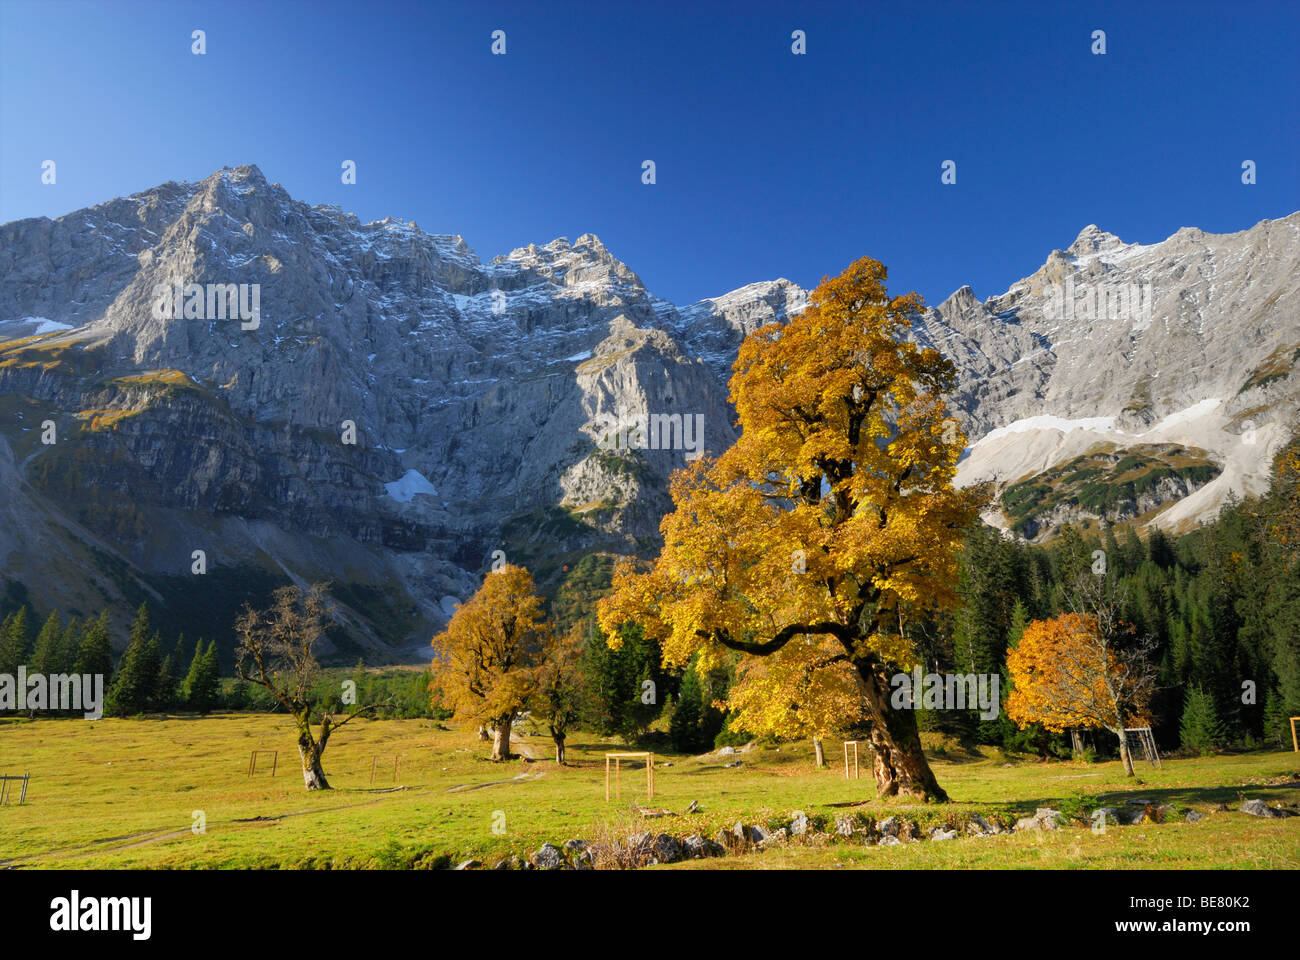 Kleiner Ahornboden with maple trees in autumn colours, Kaltwasserkarspitze and Birkkarspitze, Karwendel, Tyrol, Austria Stock Photo